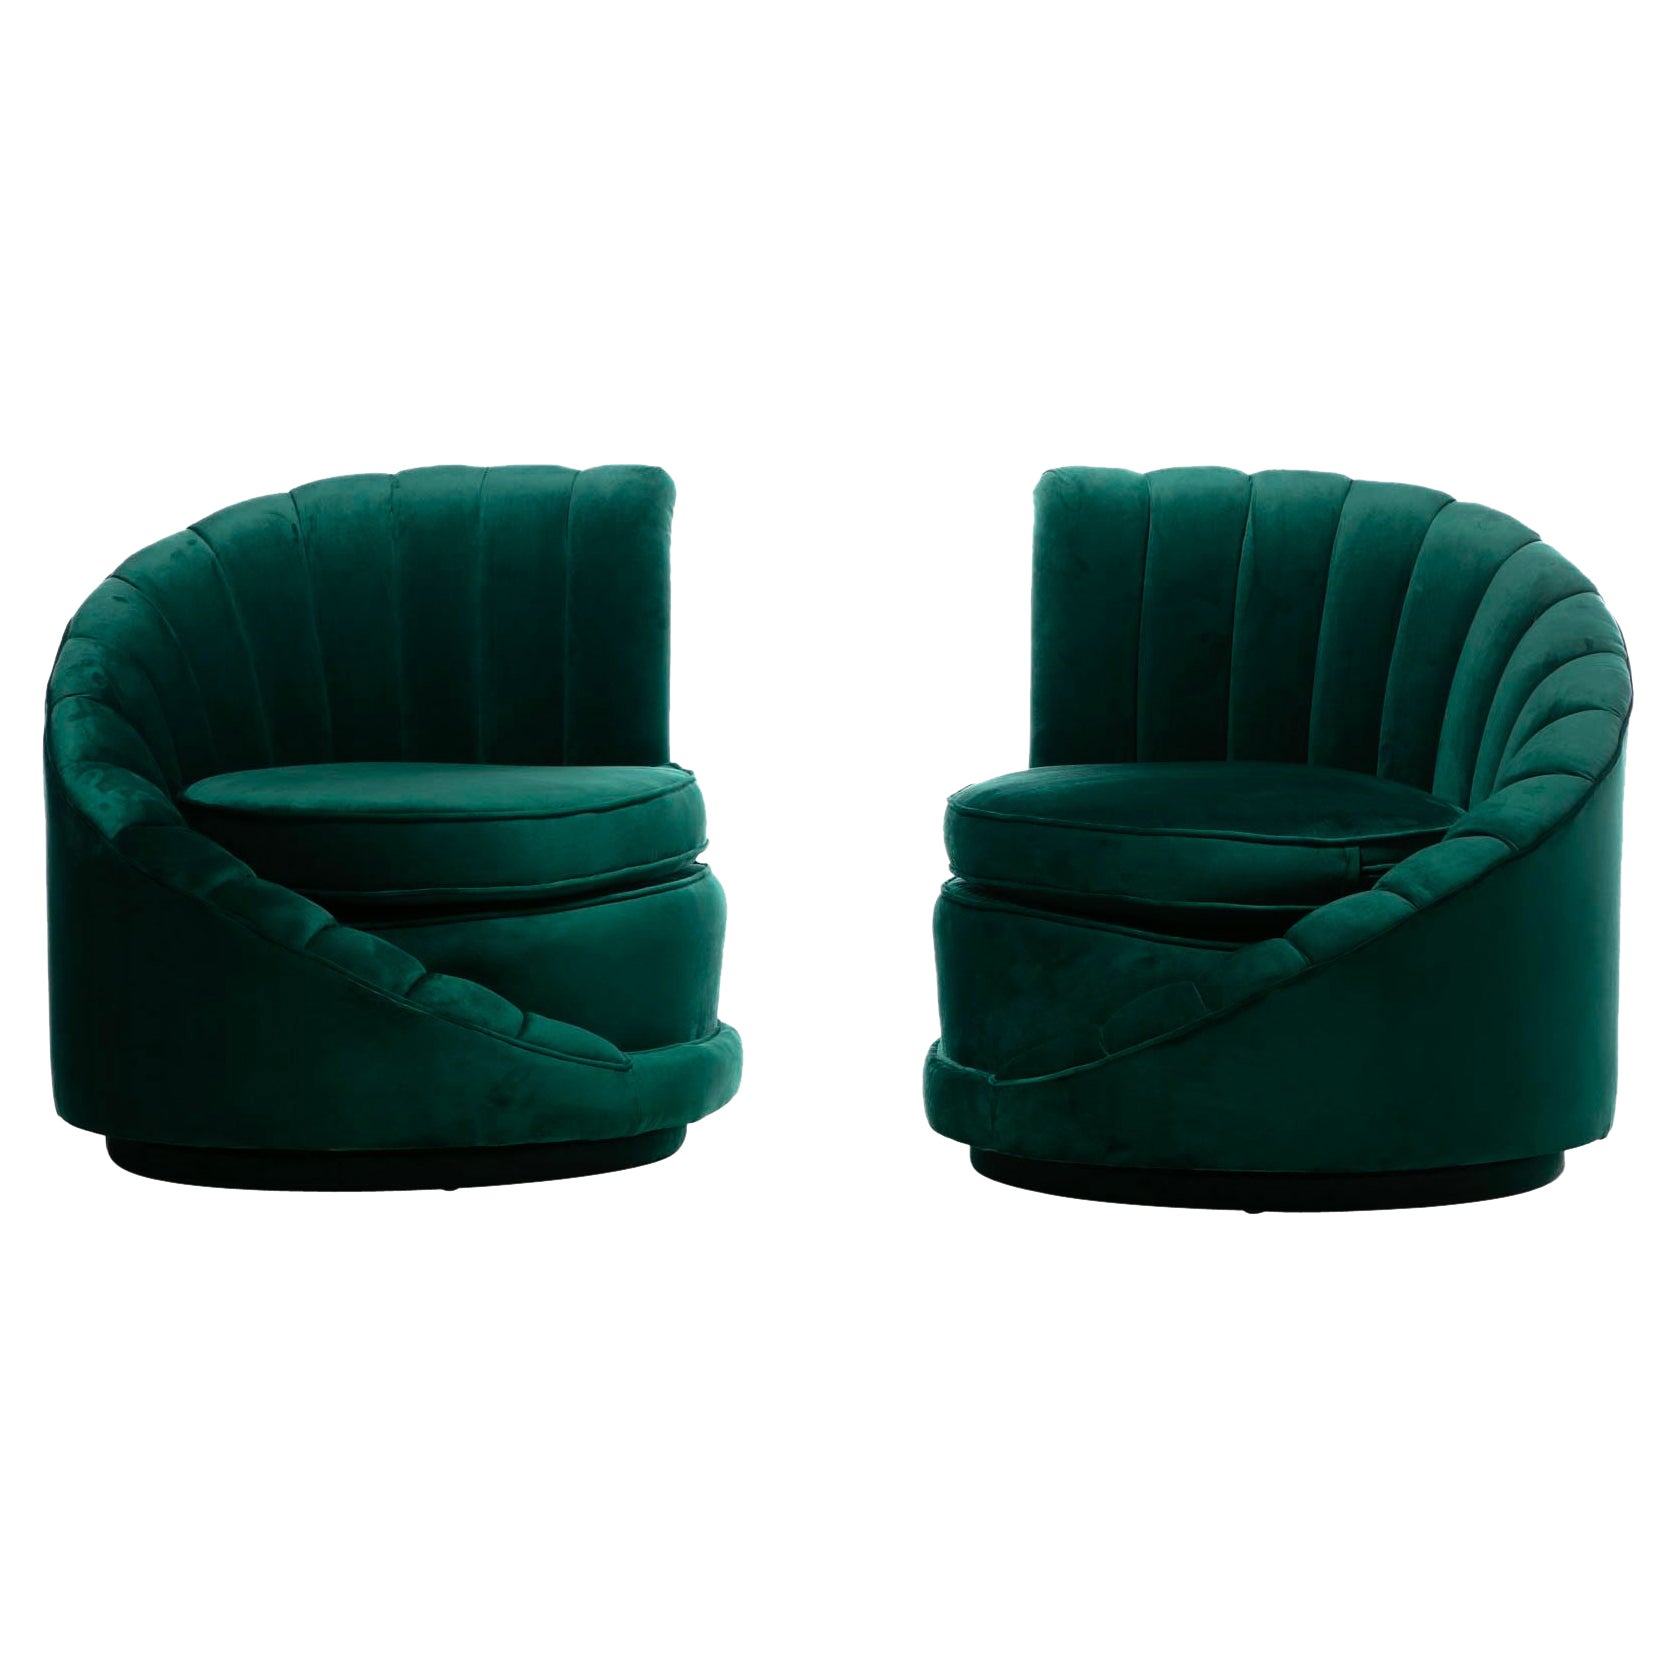 Hollywood Regency Glamorous Asymmetrical Swivel Chairs in Emerald Green Velvet